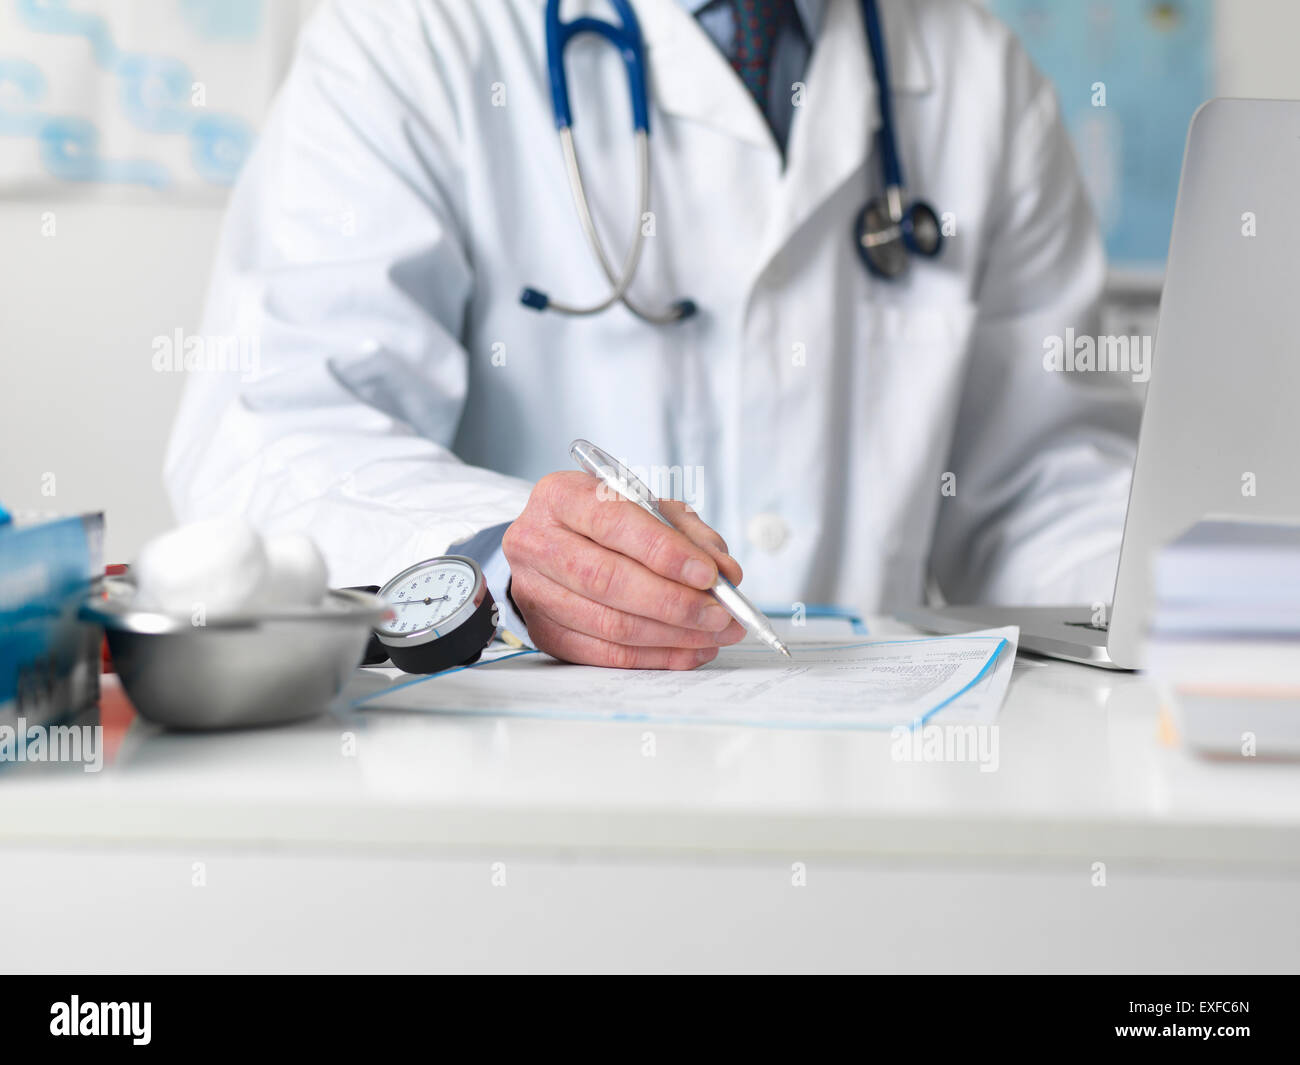 Médecin contrôle des notes médicales avant de prescrire un traitement Banque D'Images